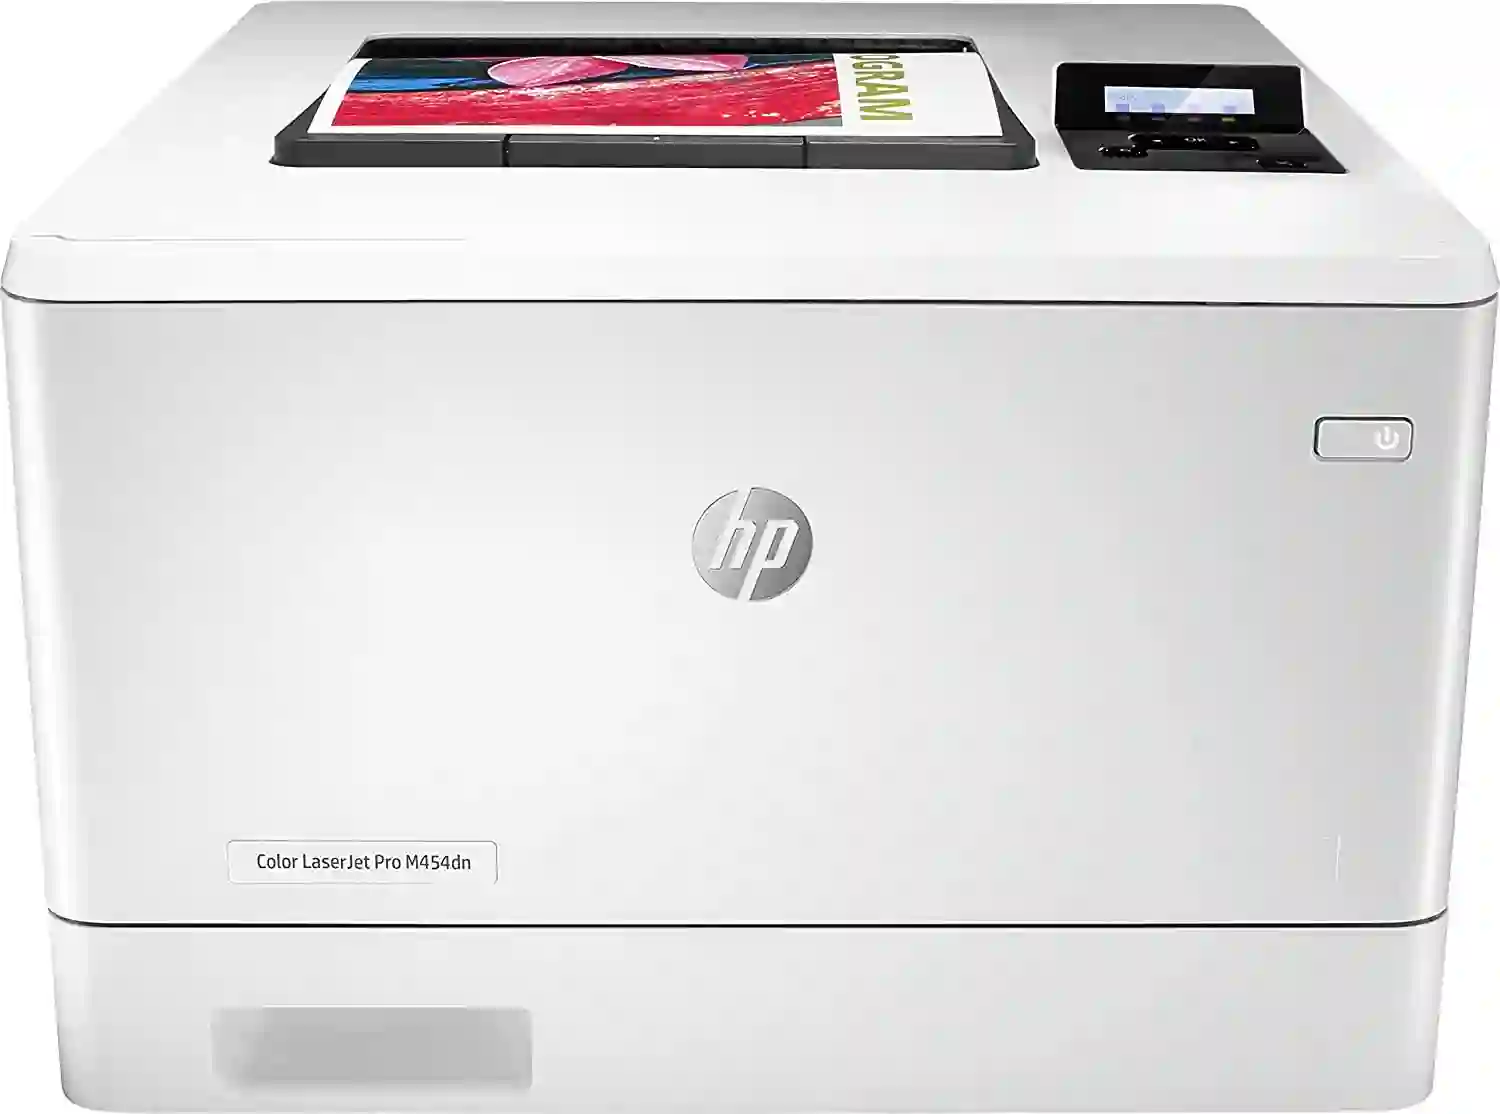 HP Laserjet Pro M454dn Wired Color Laser Printer